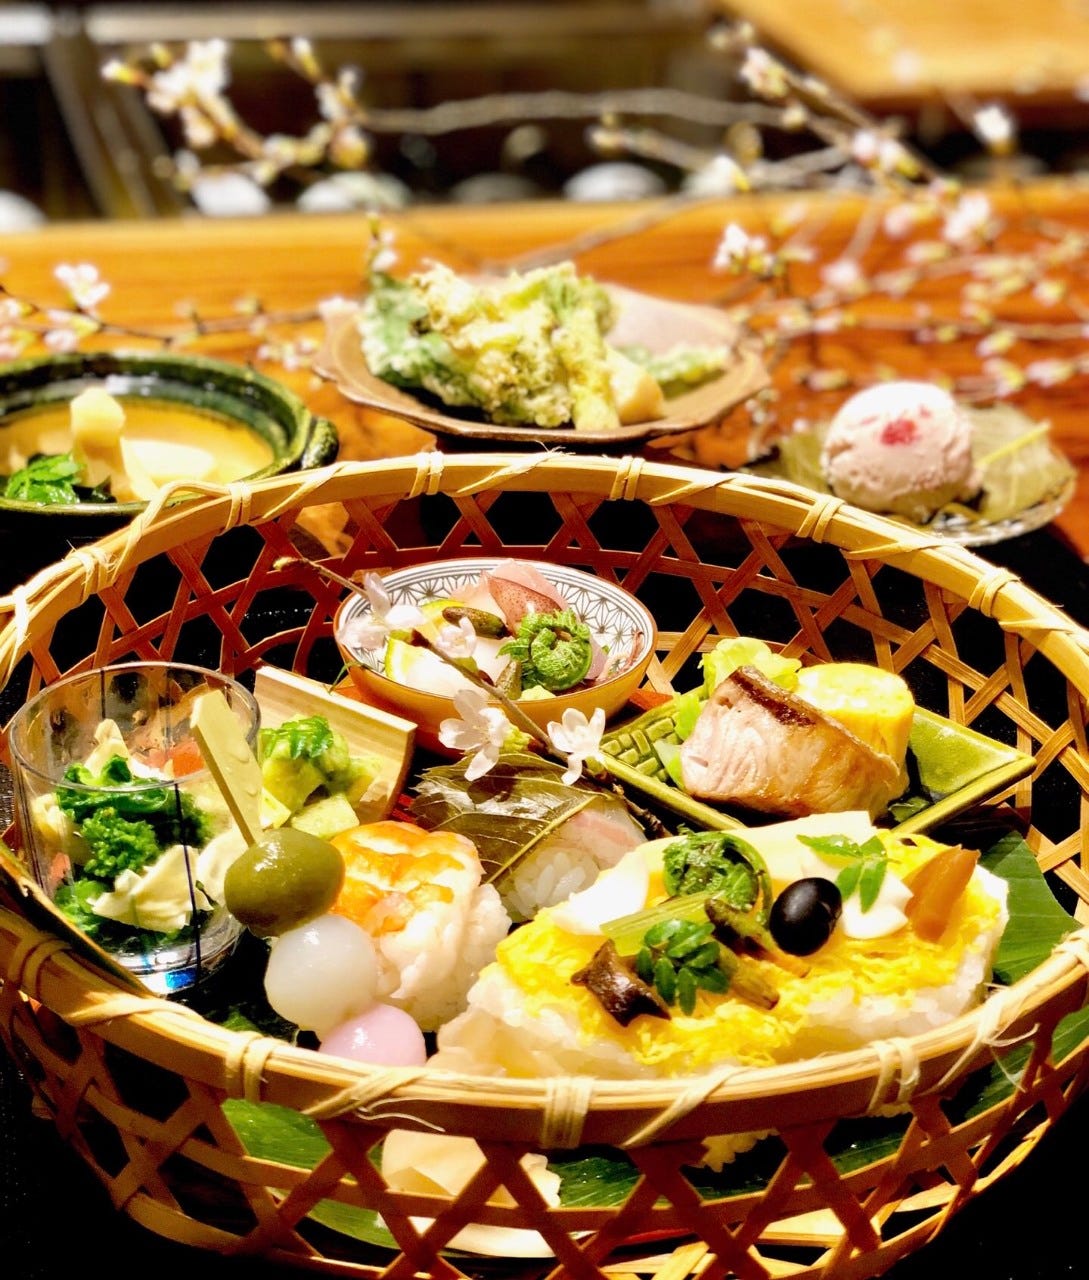 京都和食きはる照片 四条乌丸 乌丸御池 割烹 传统的高级日本料理 Gurunavi 日本美食餐厅指南